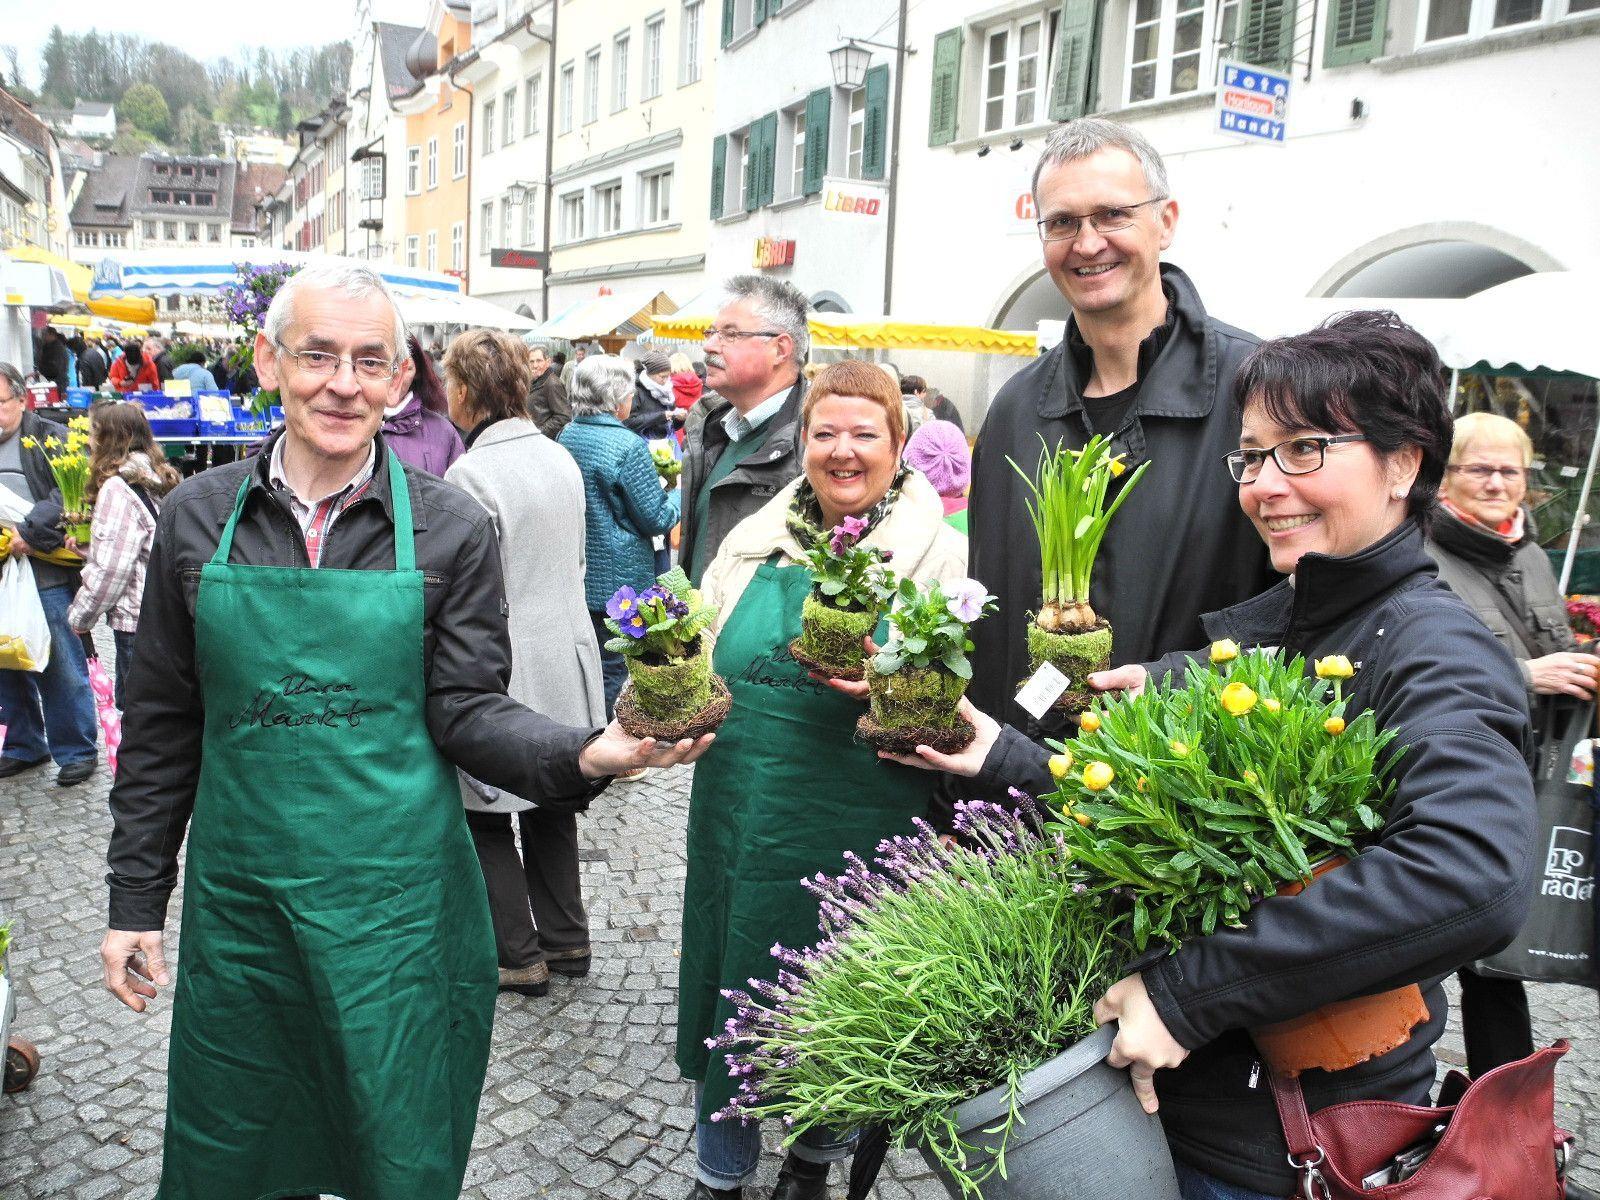 (l.) "Quadro Ernst" und seine Kollegin Karin Fink verteilten im Namen der Stadt Oster-Blumen-Grüße an die Marktbesucher